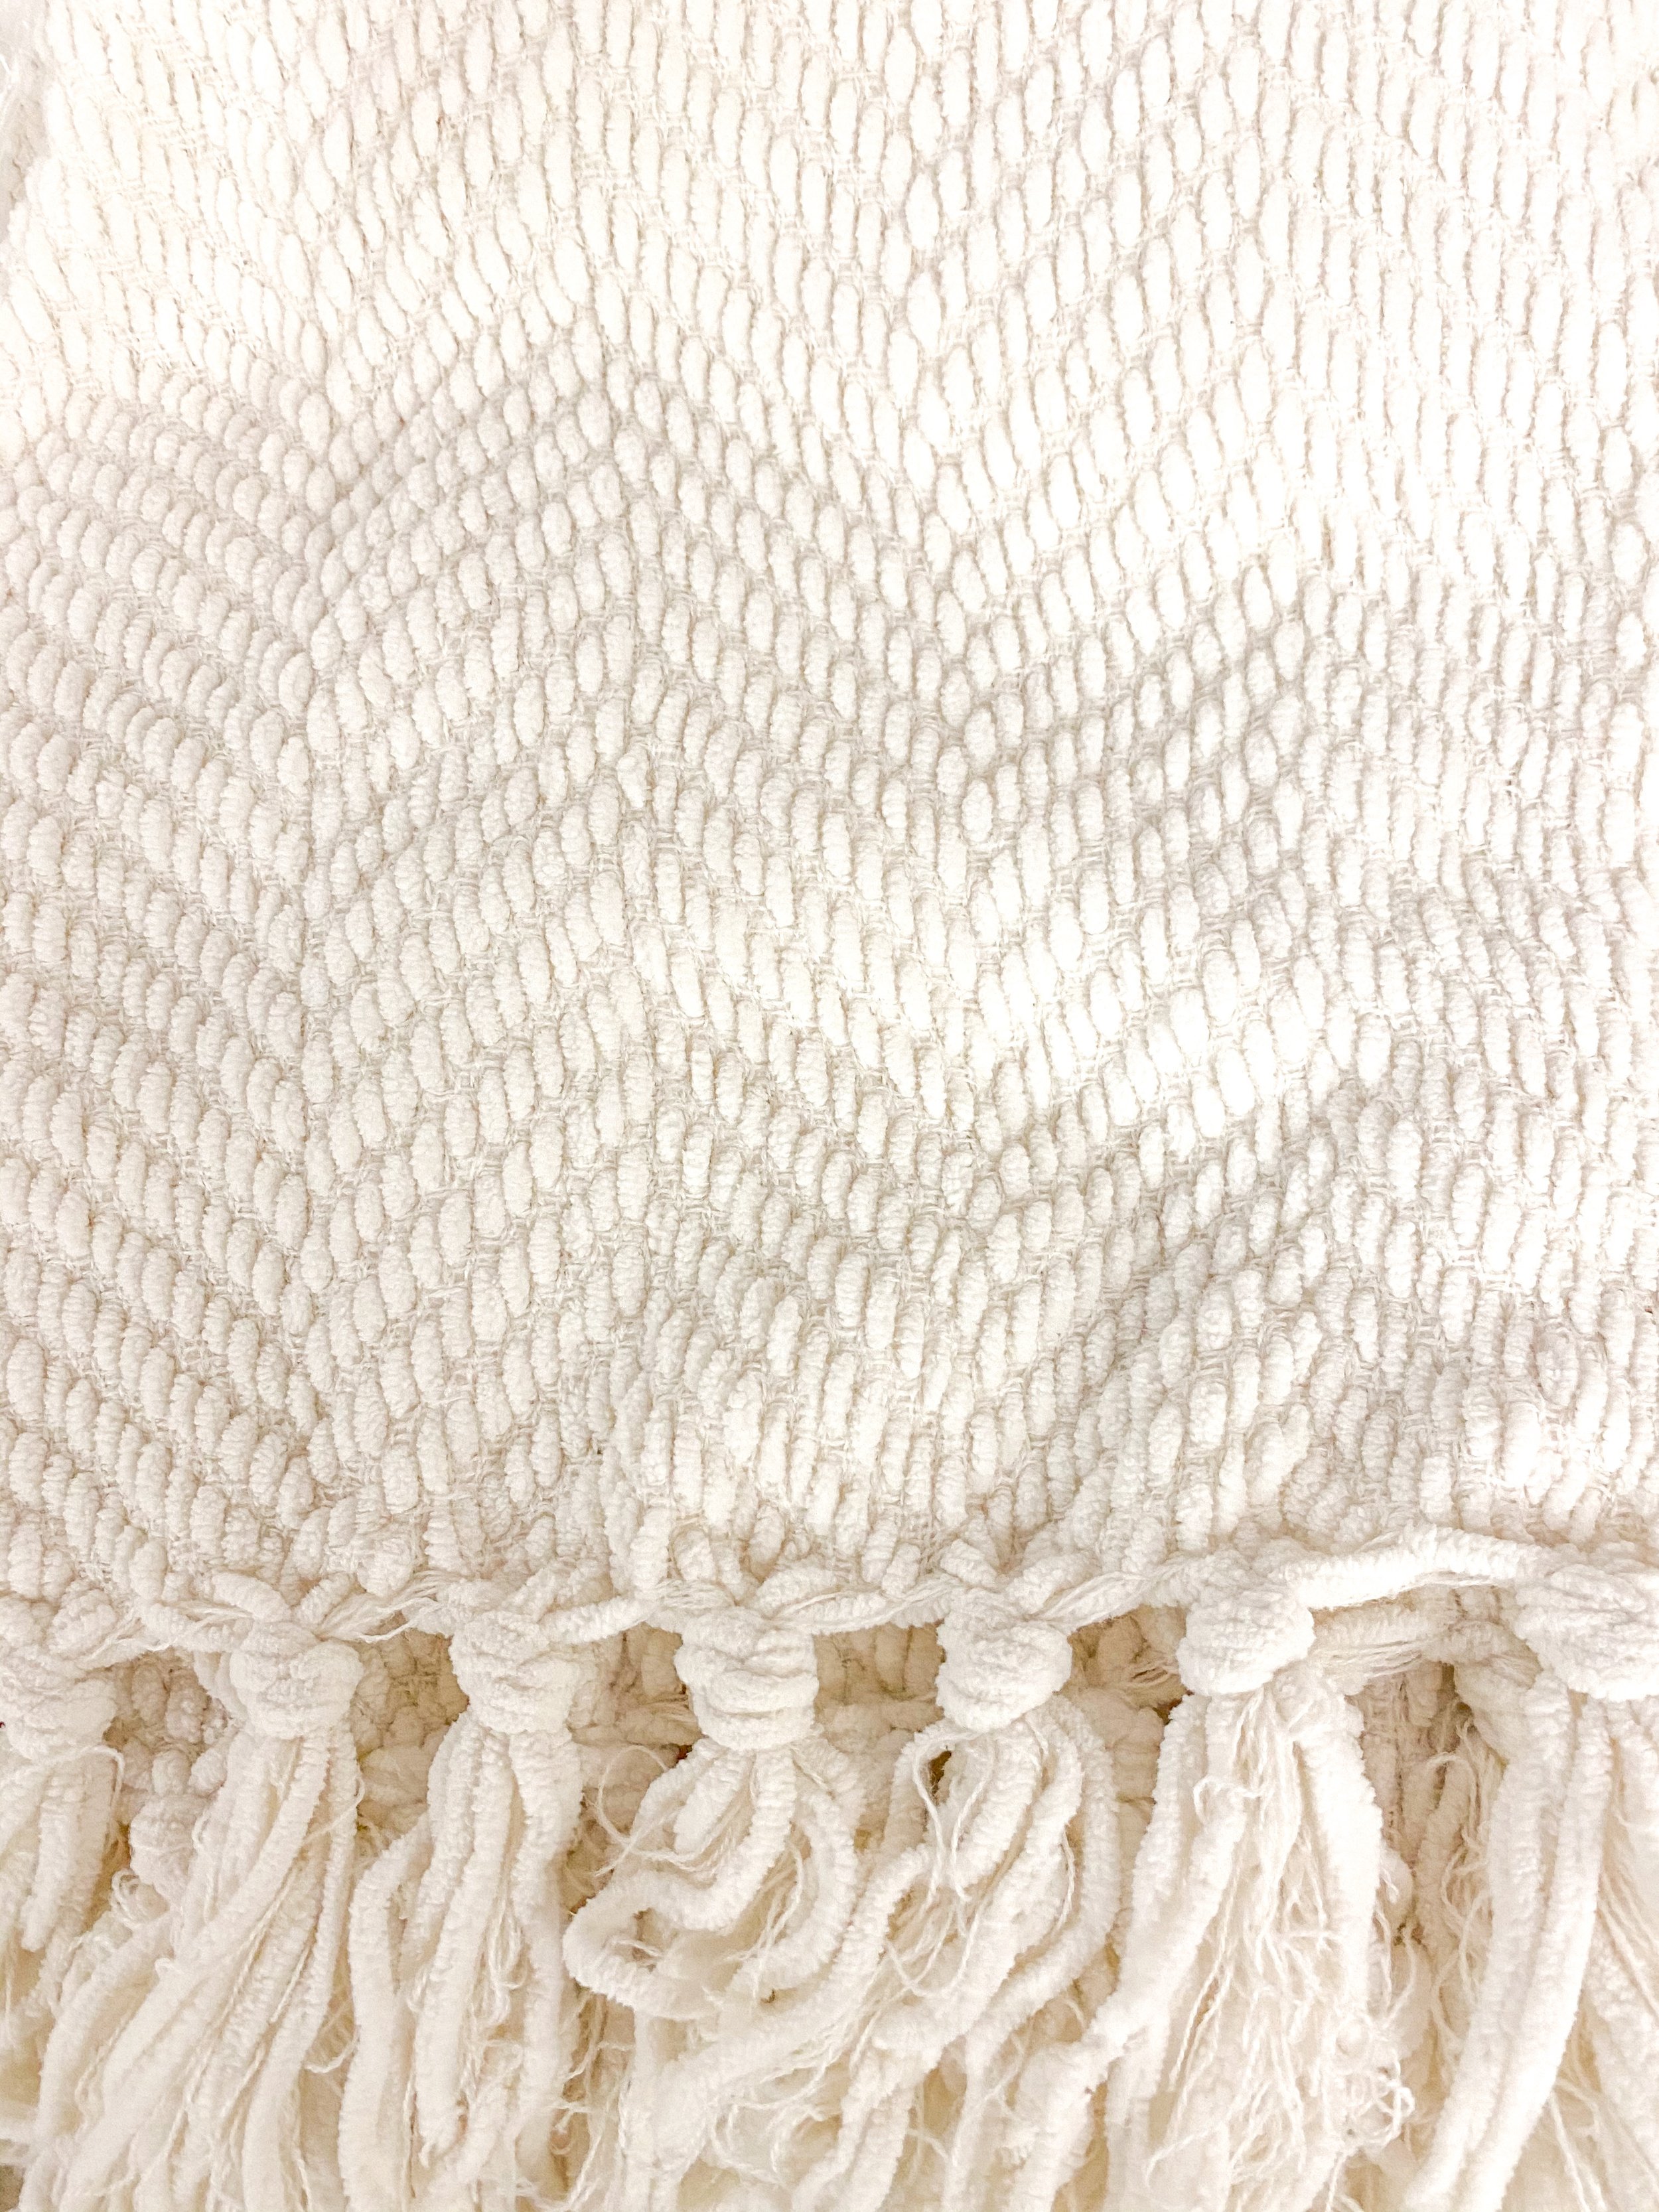 Ivory Knit Blanket $15